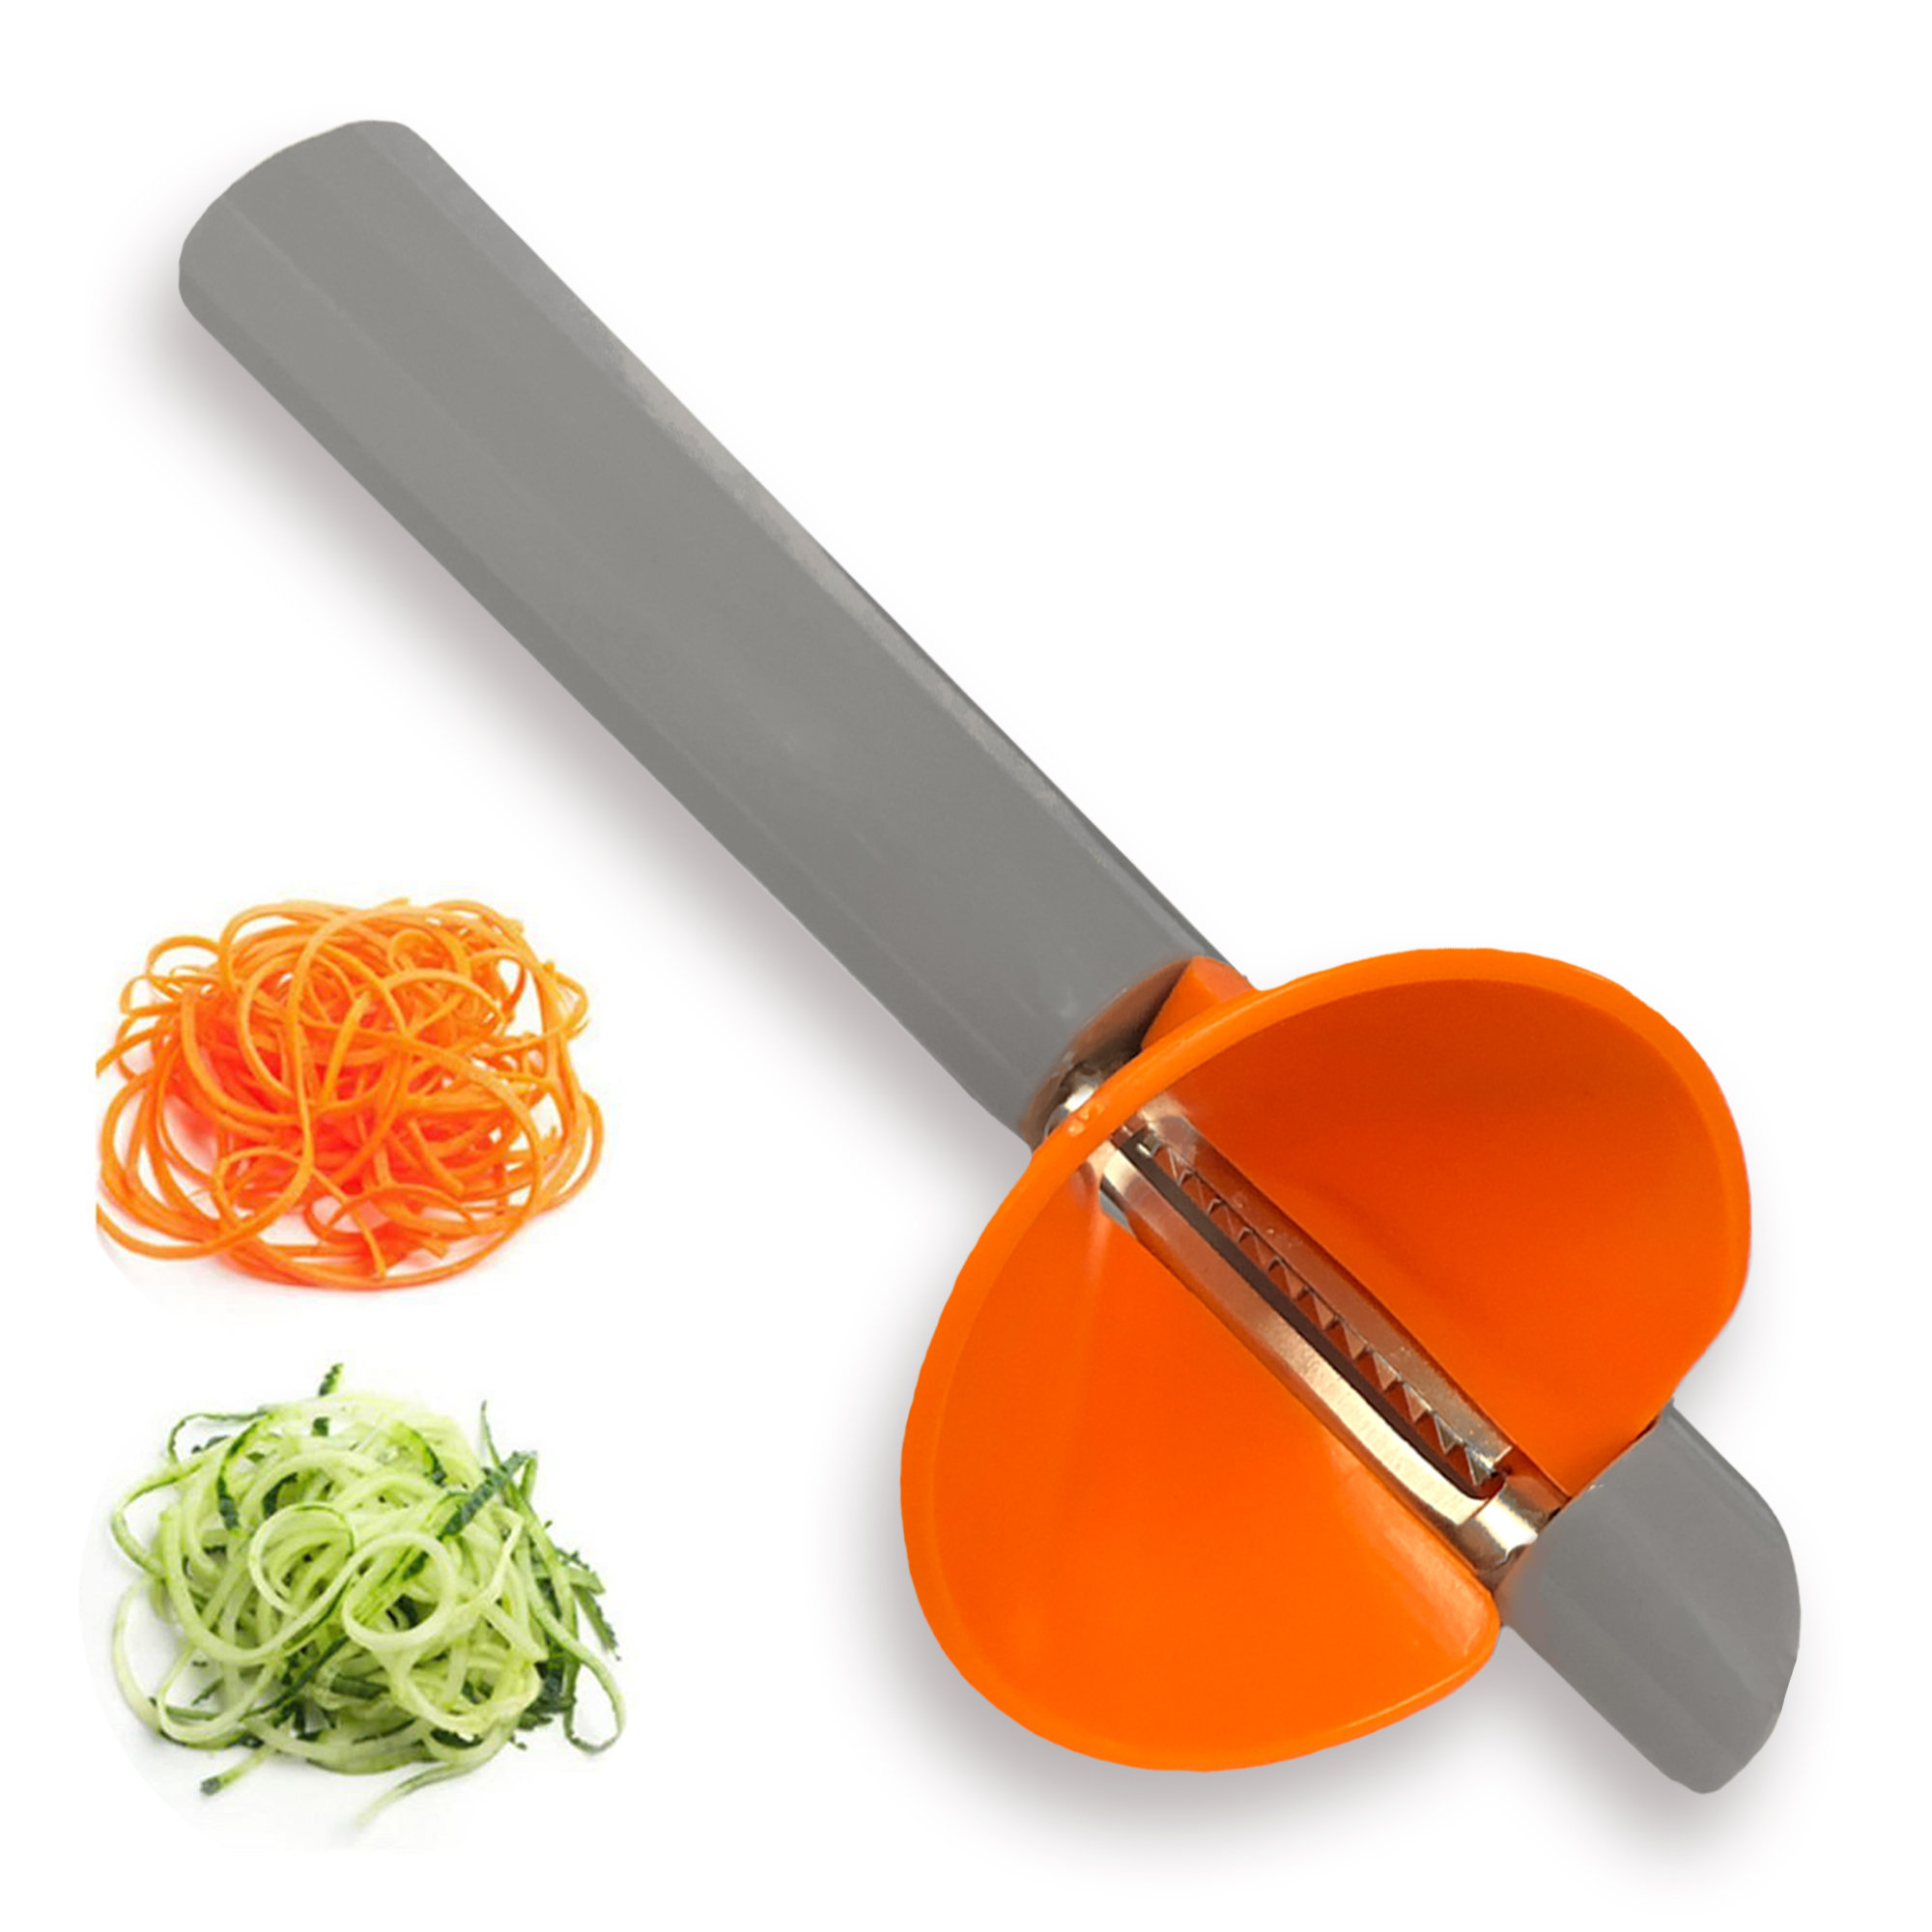 Home Basics 3-in-1 Handheld Vegetable Spiralizer Slicer